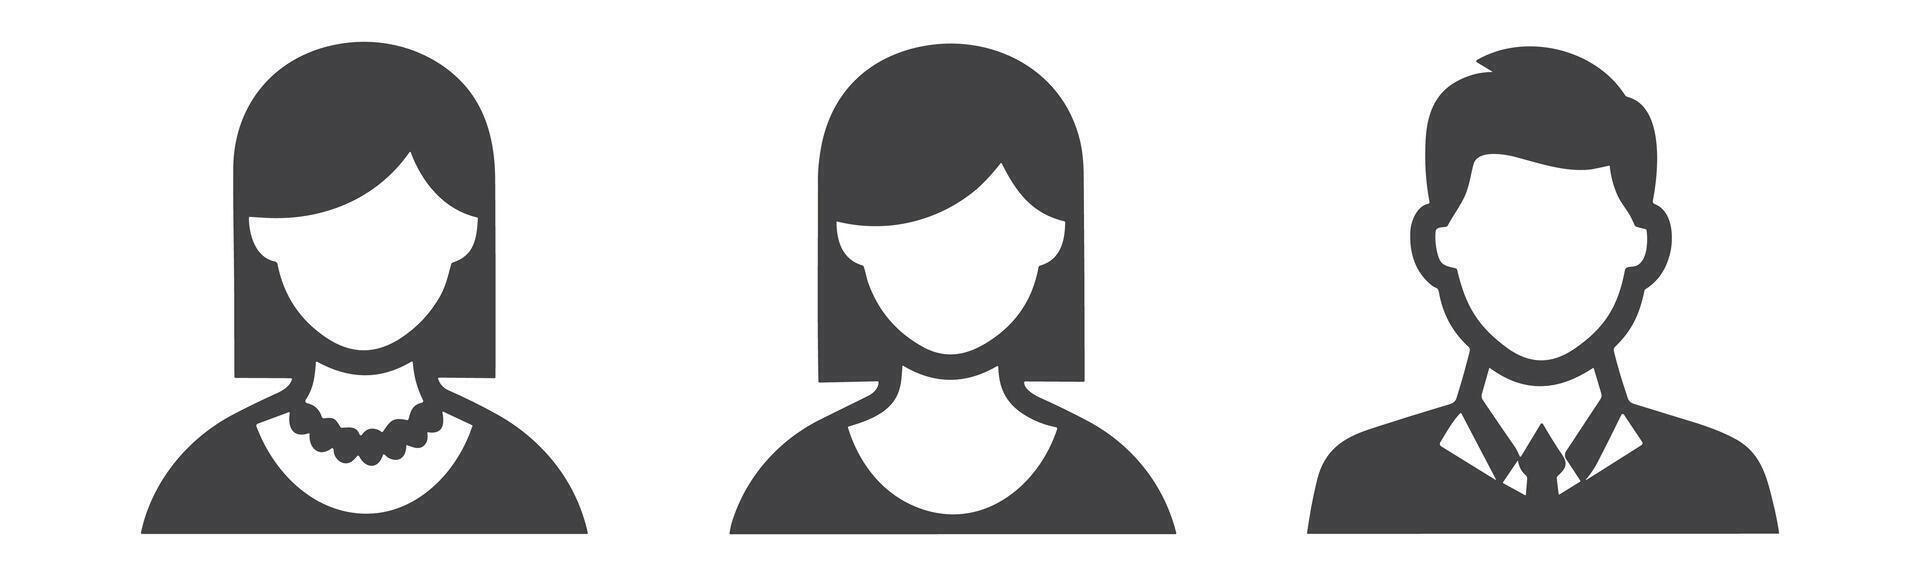 Benutzerbild Profil Symbol einstellen einschließlich männlich und weiblich. vektor